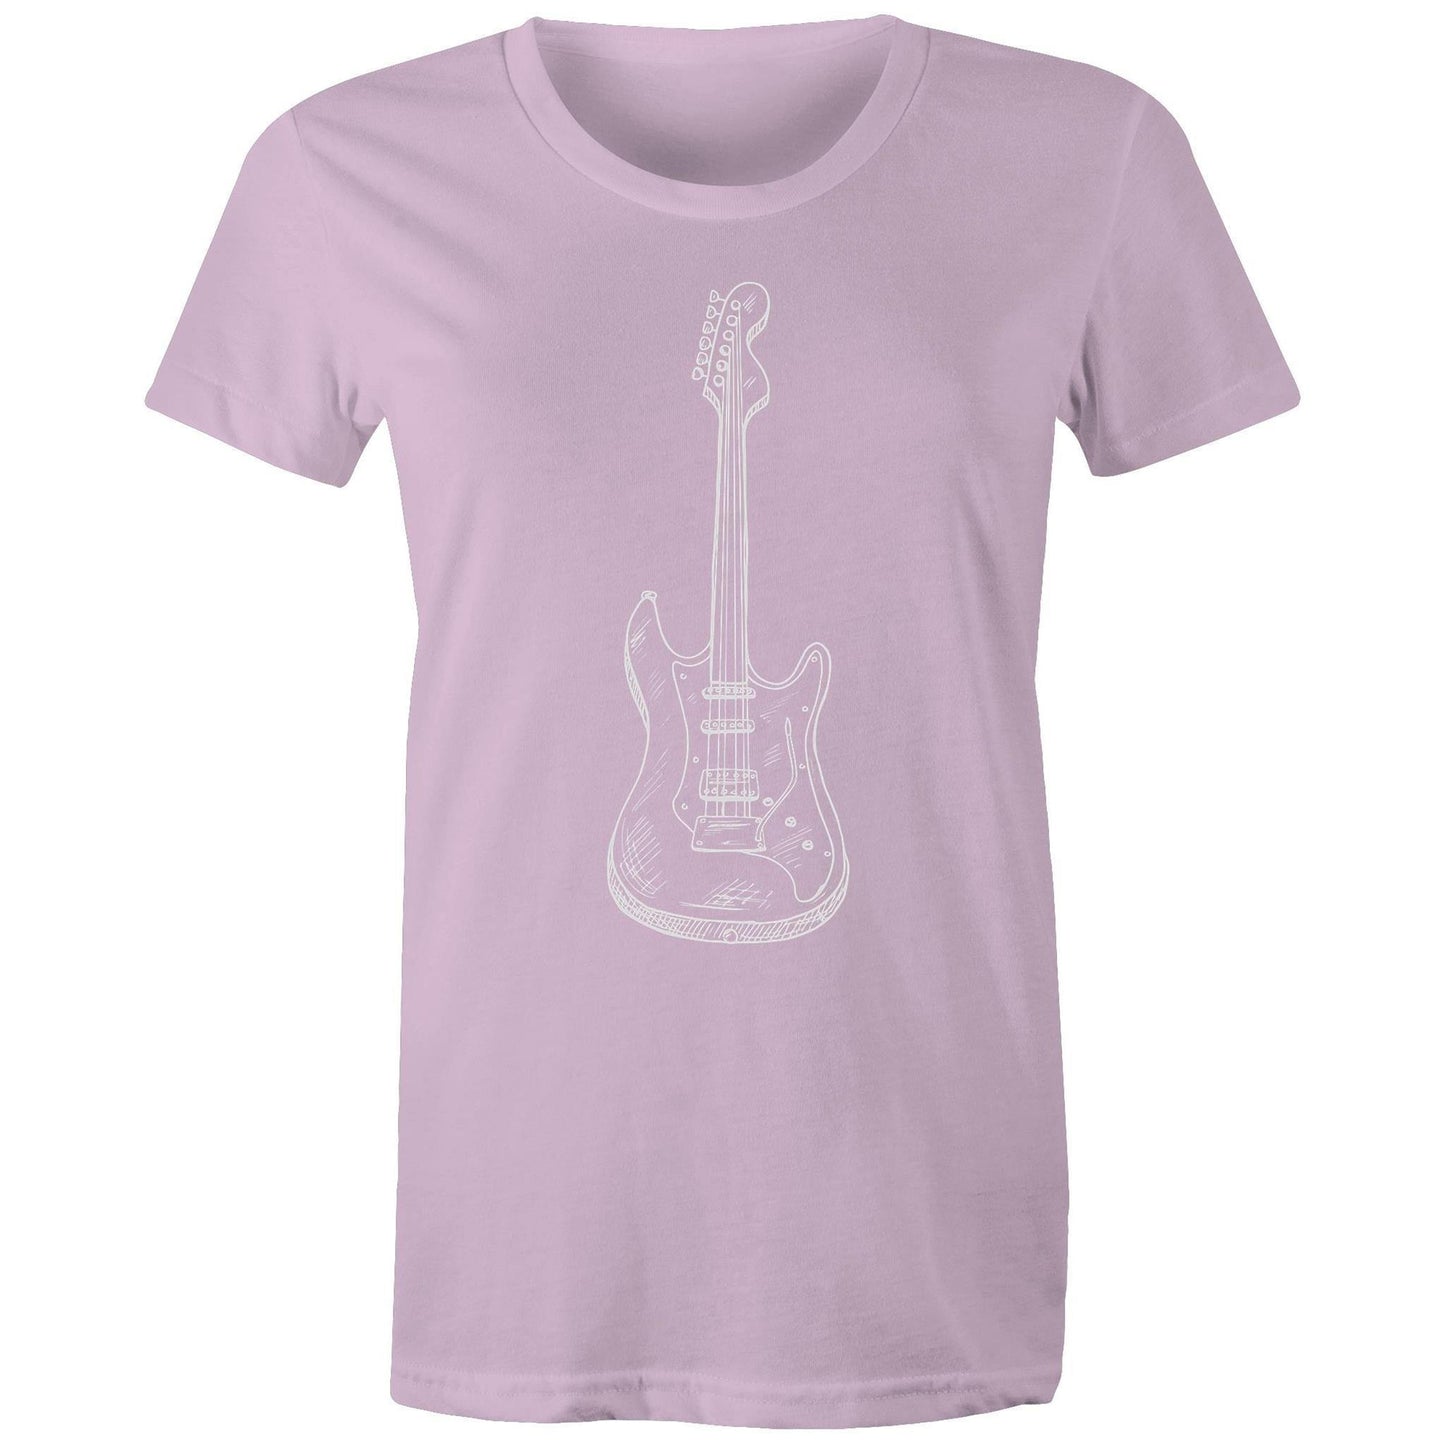 Guitar - Women's T-shirt Lavender Womens T-shirt Music Womens